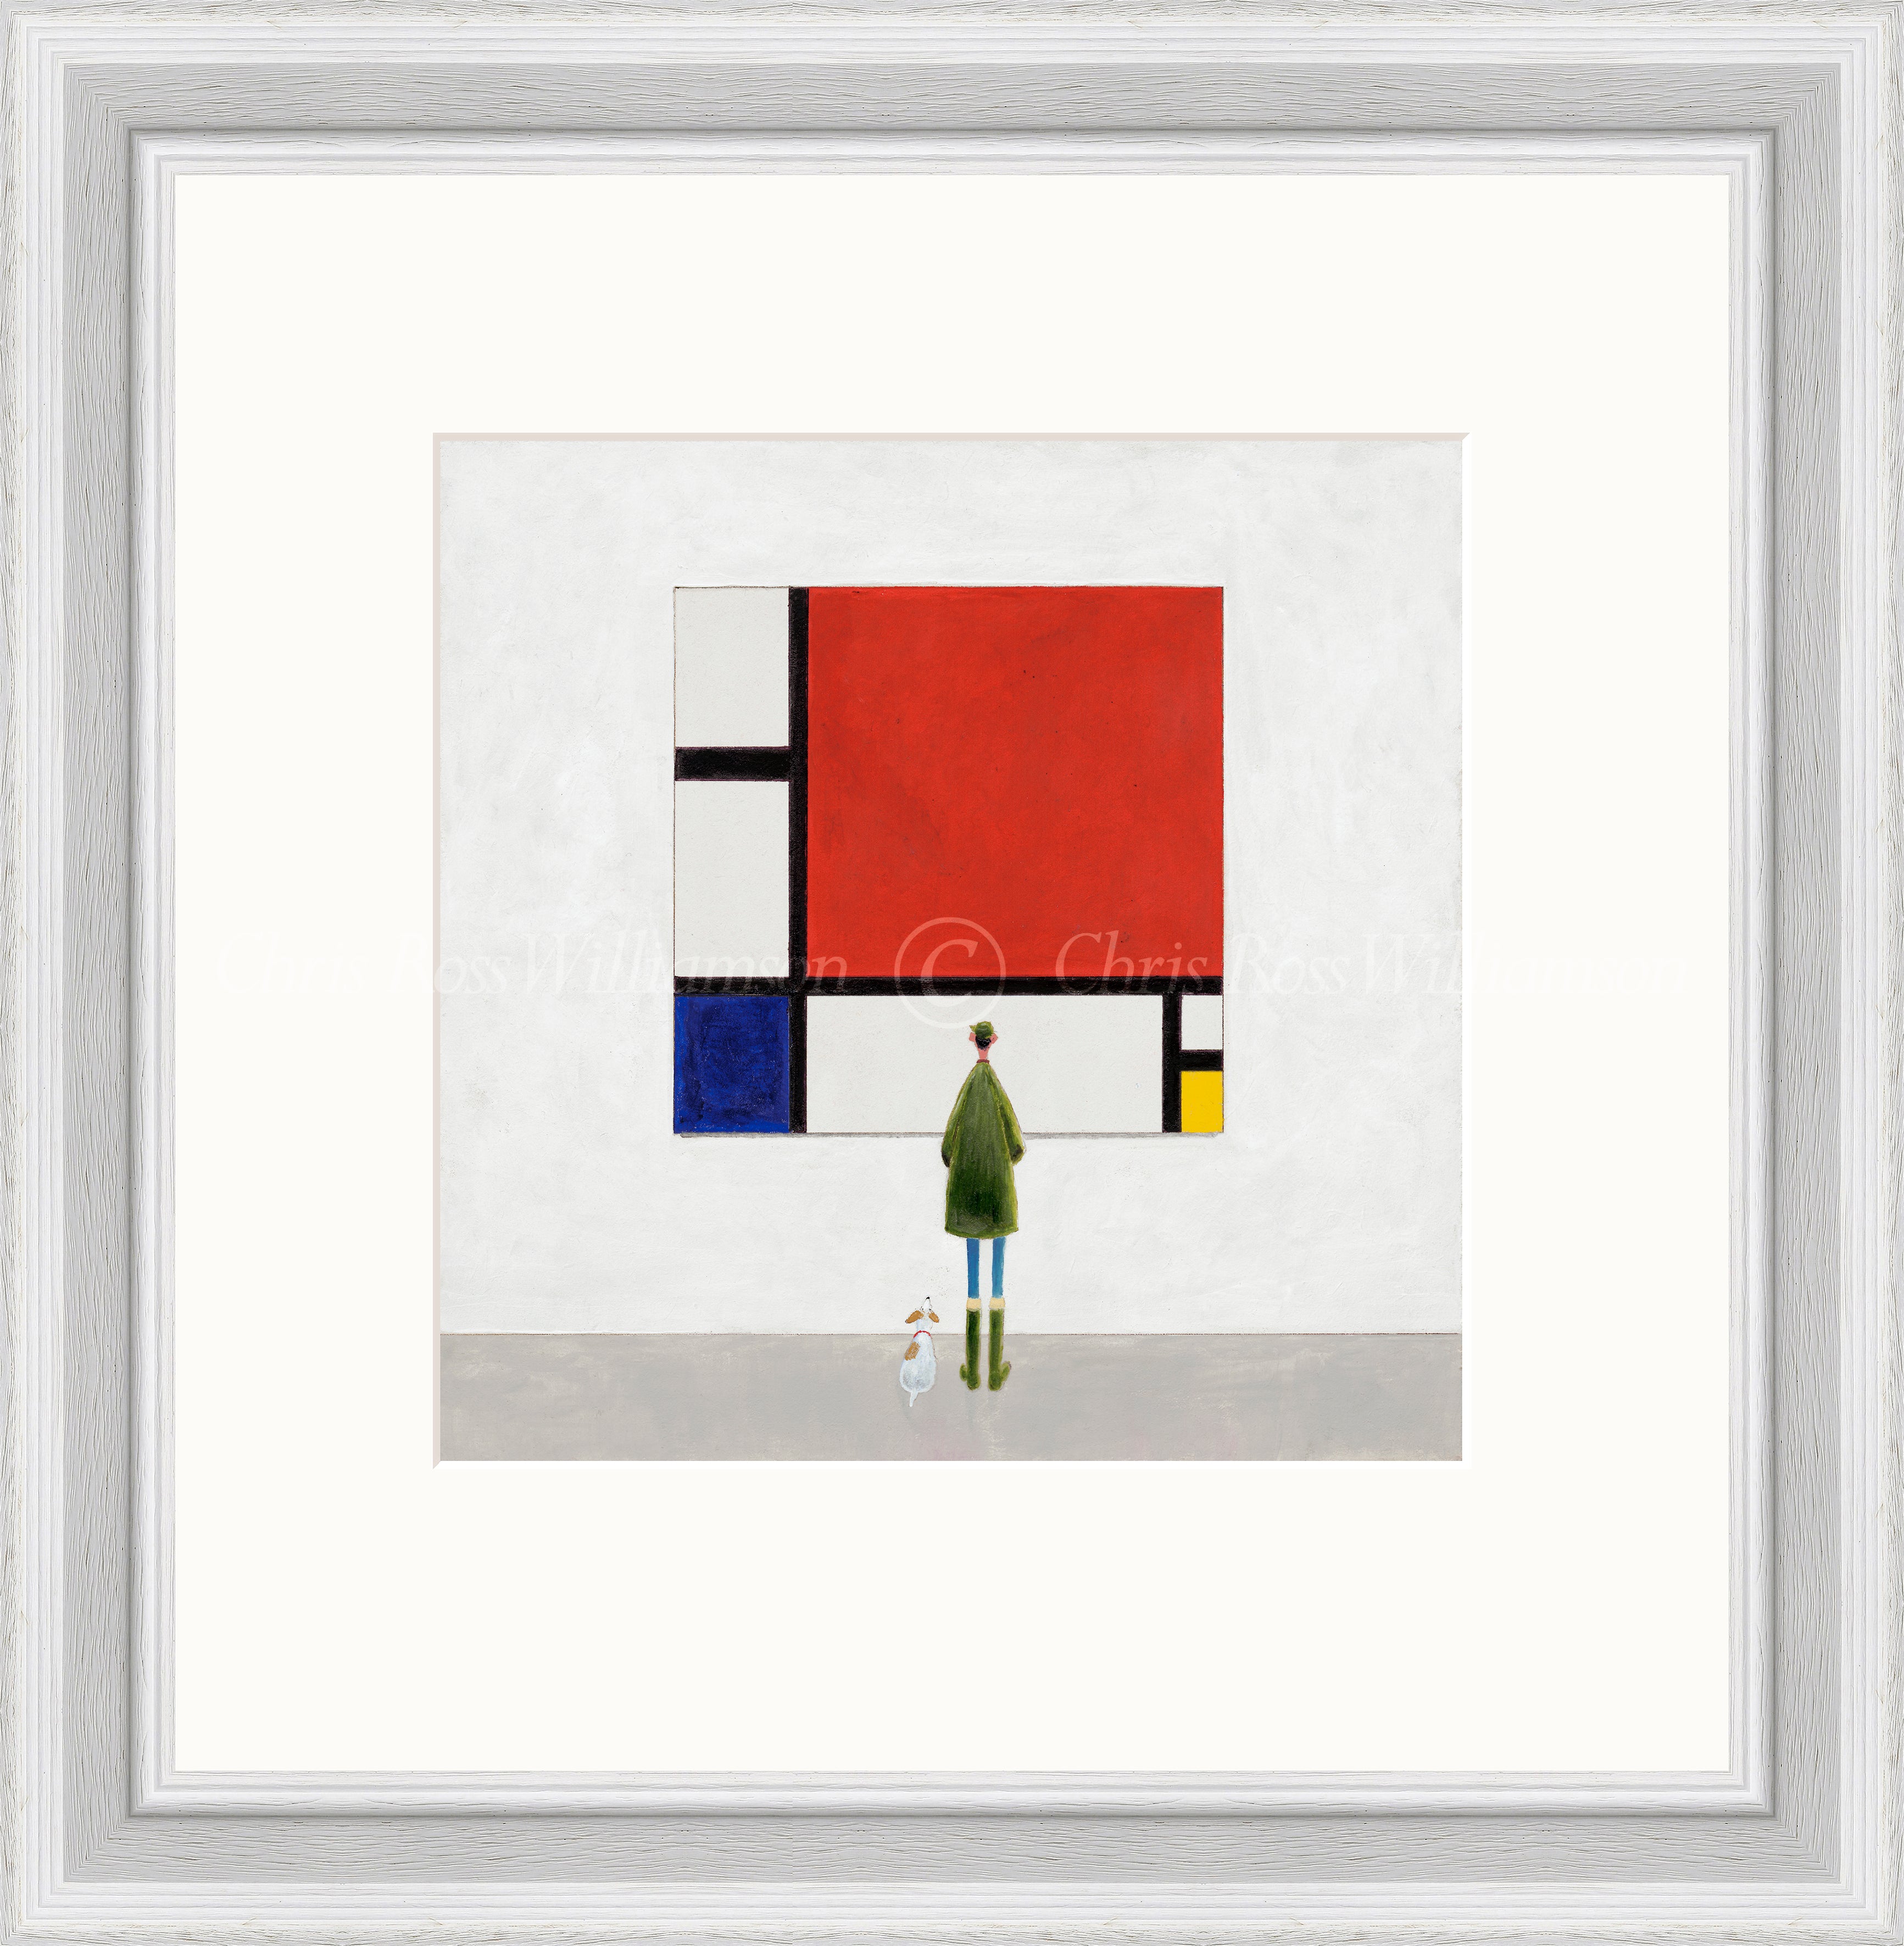 Chris Ross Williamson The Mondrian framed artworrk